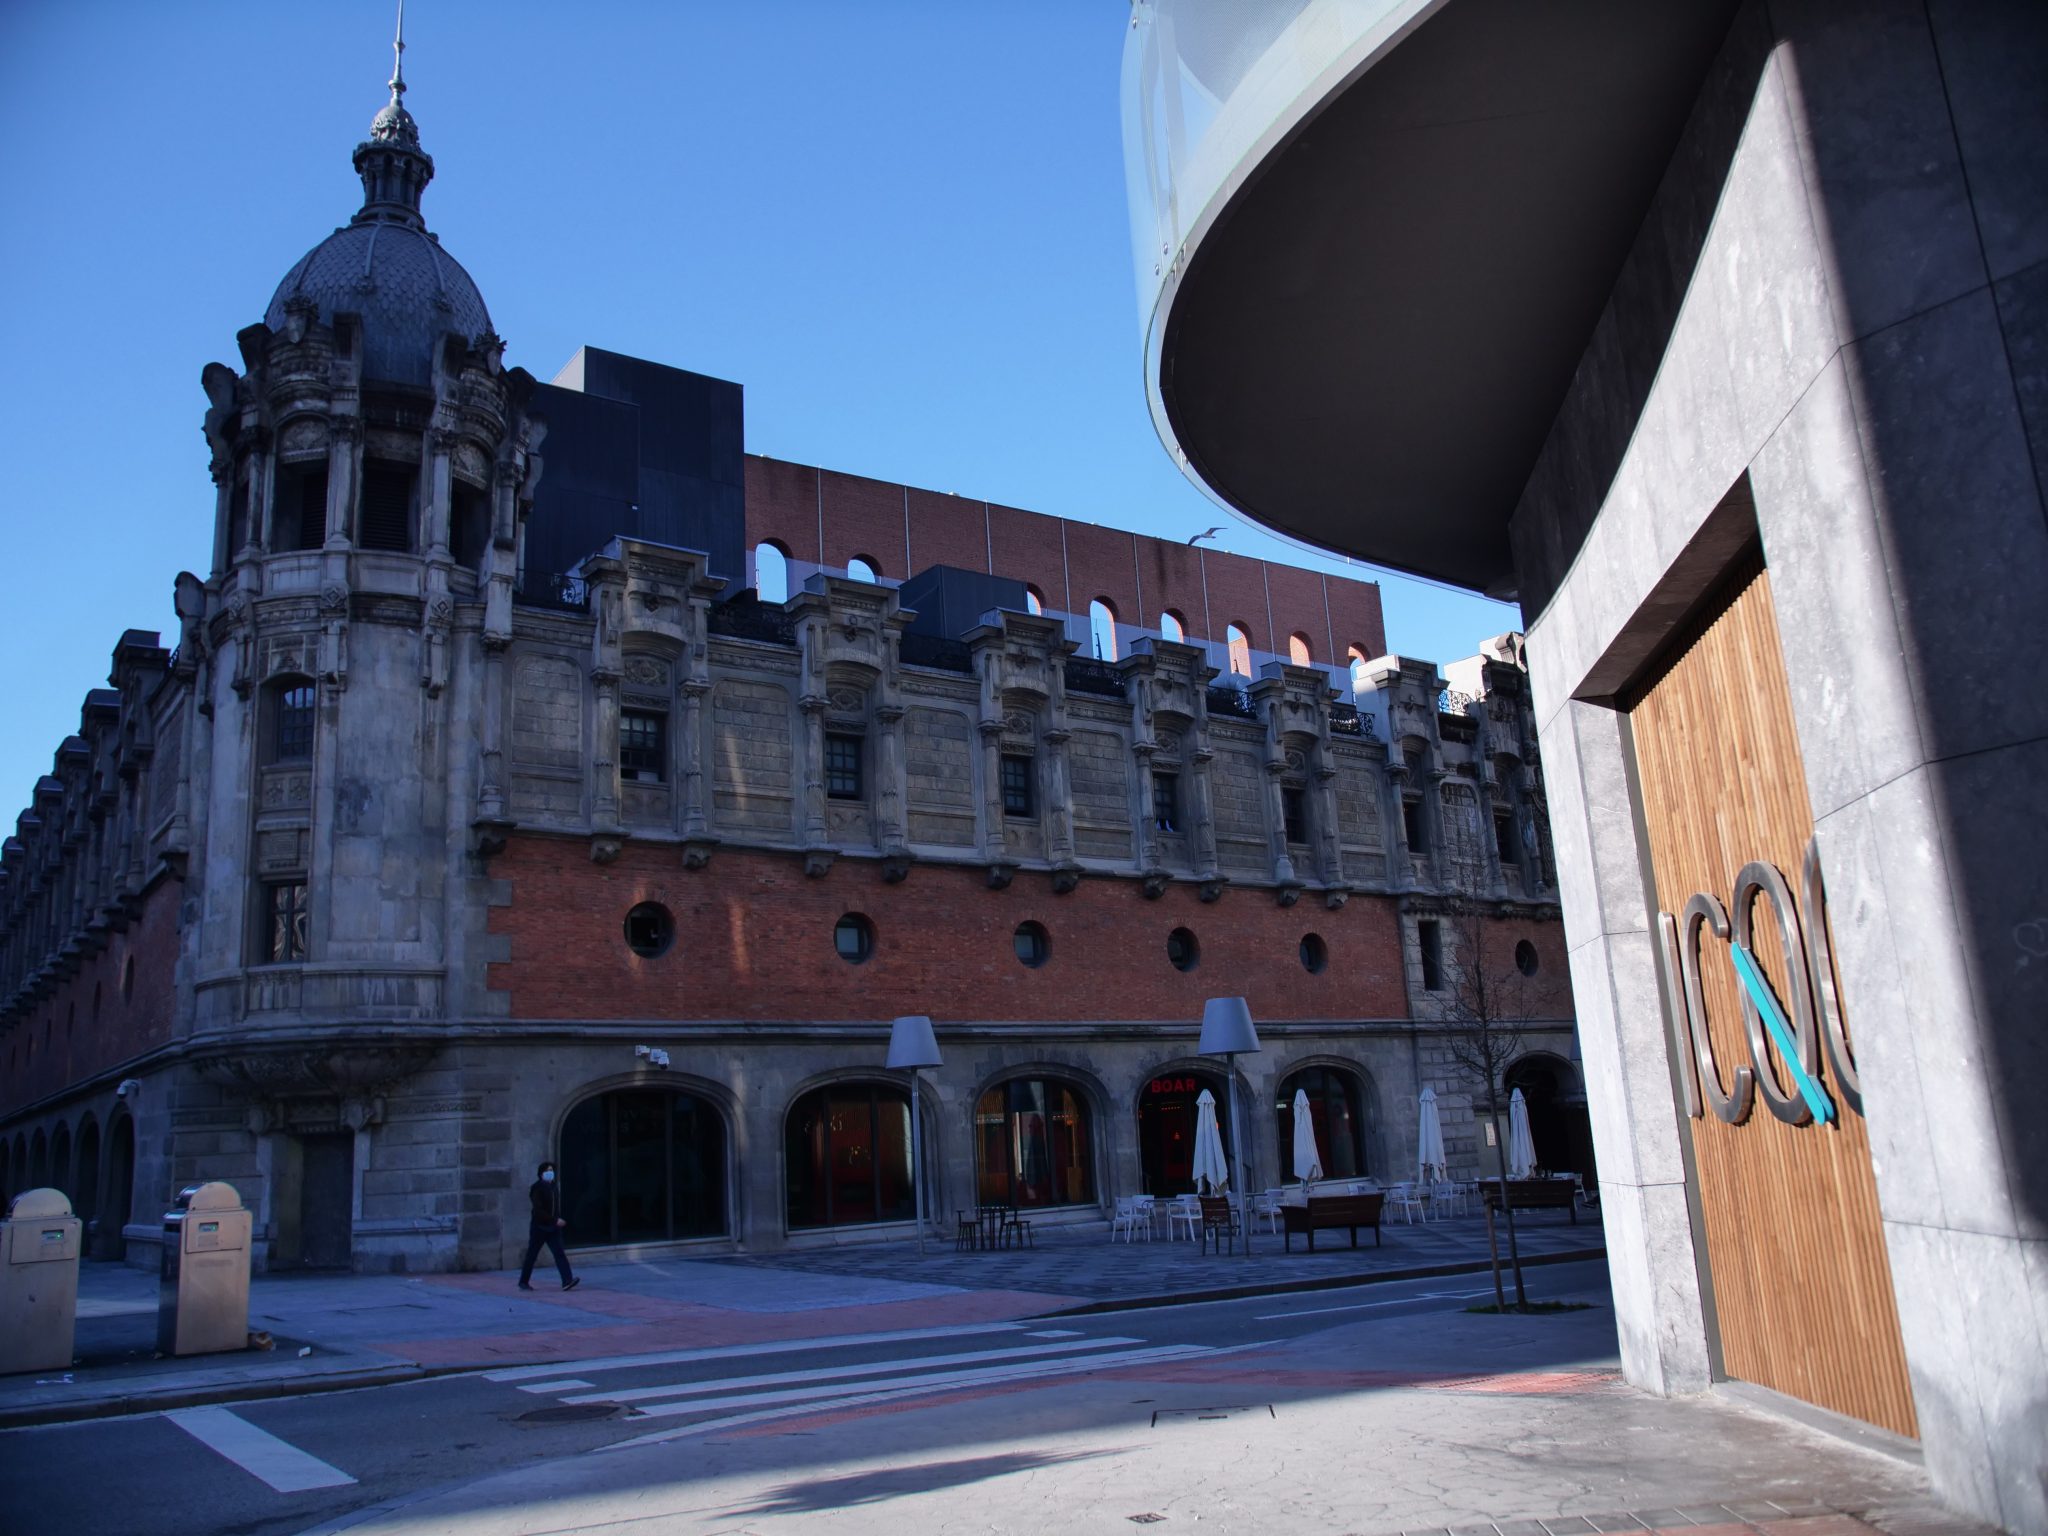 Edificio de la Alhóndiga de Bilbao desde el exterior del ICQO